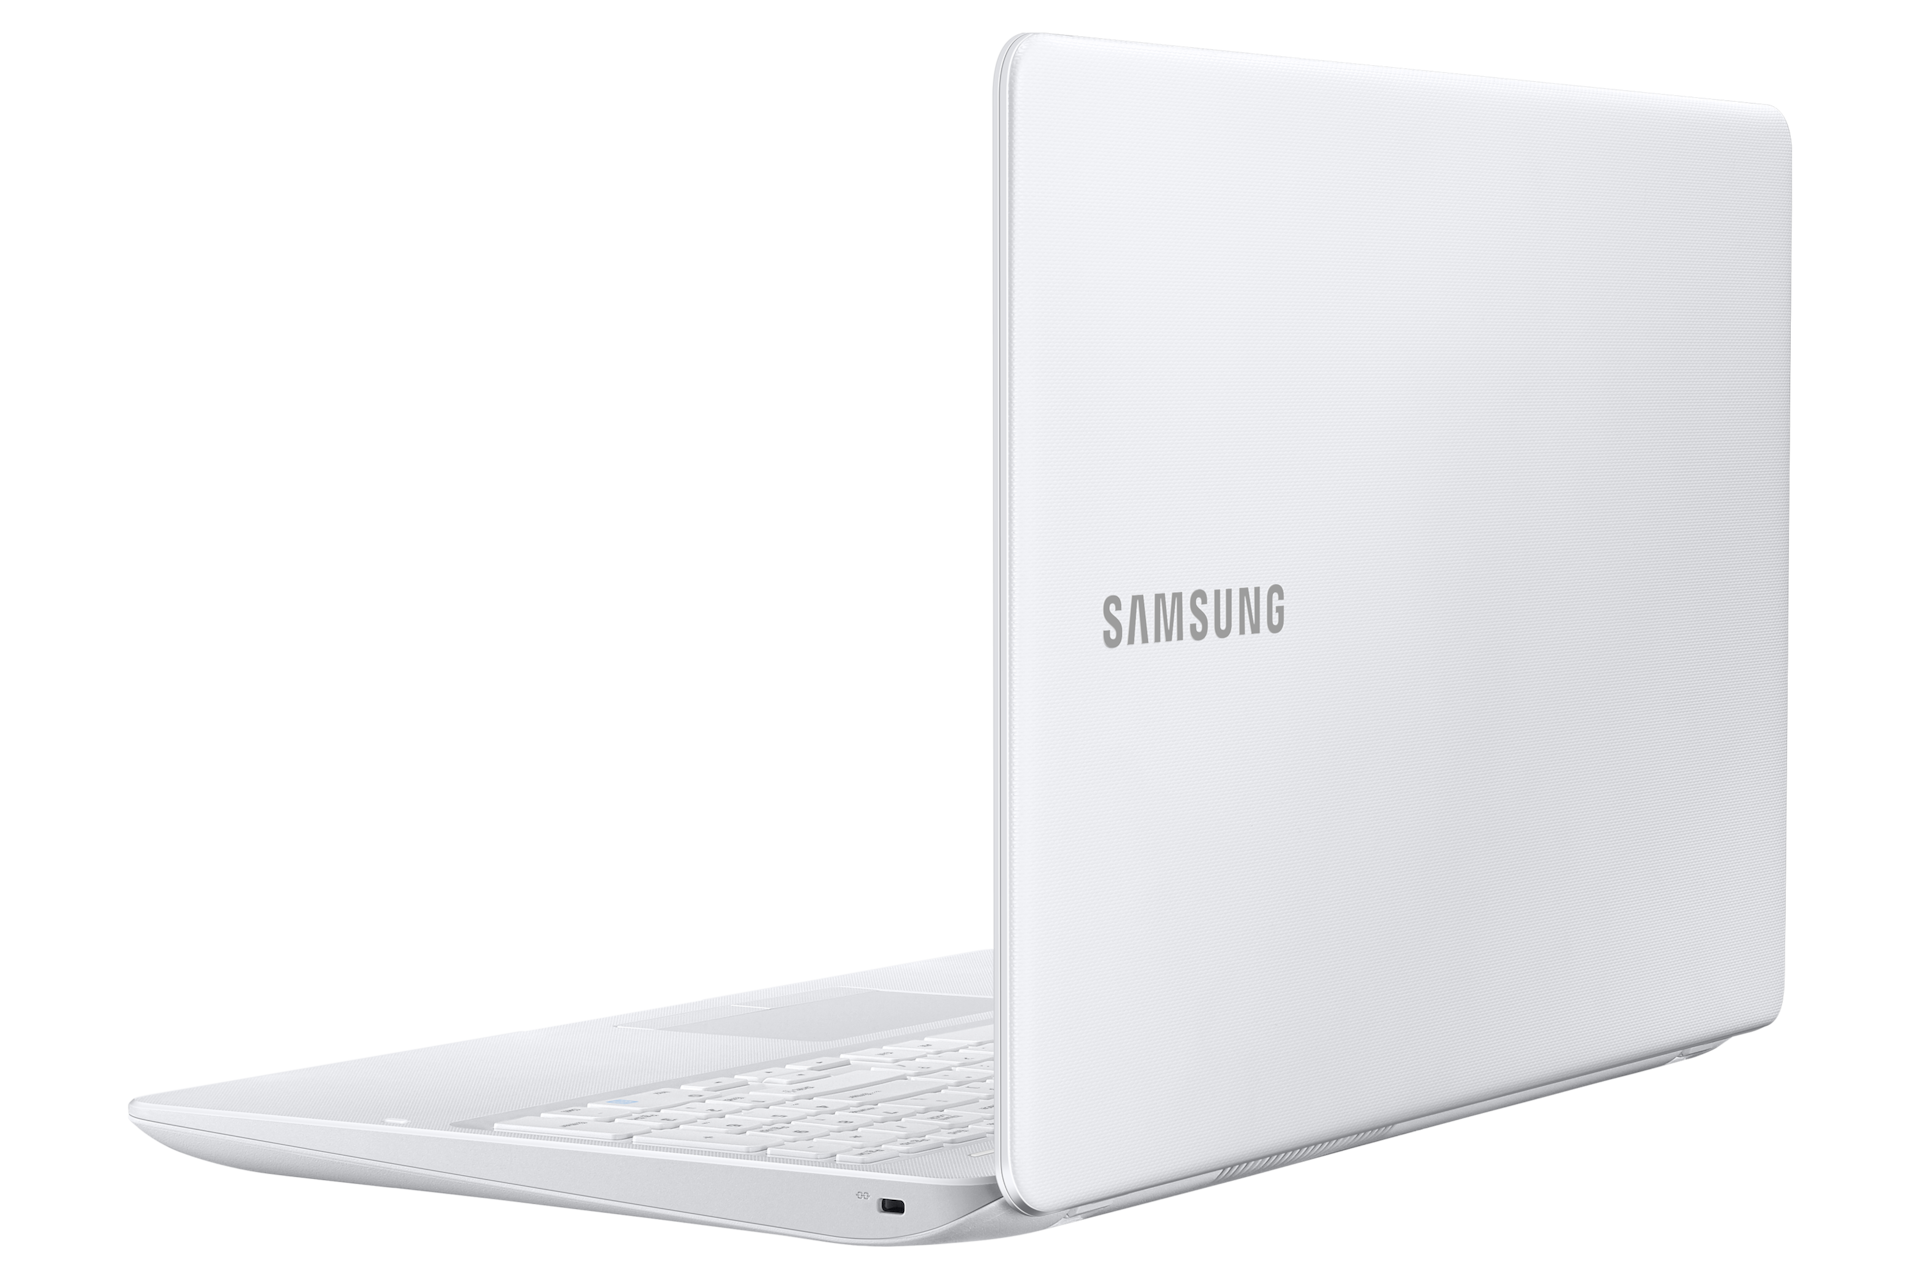 노트북 3 (39.6 cm)
NT300E5K-Y56W
Core™ i5 / 256 GB SSD